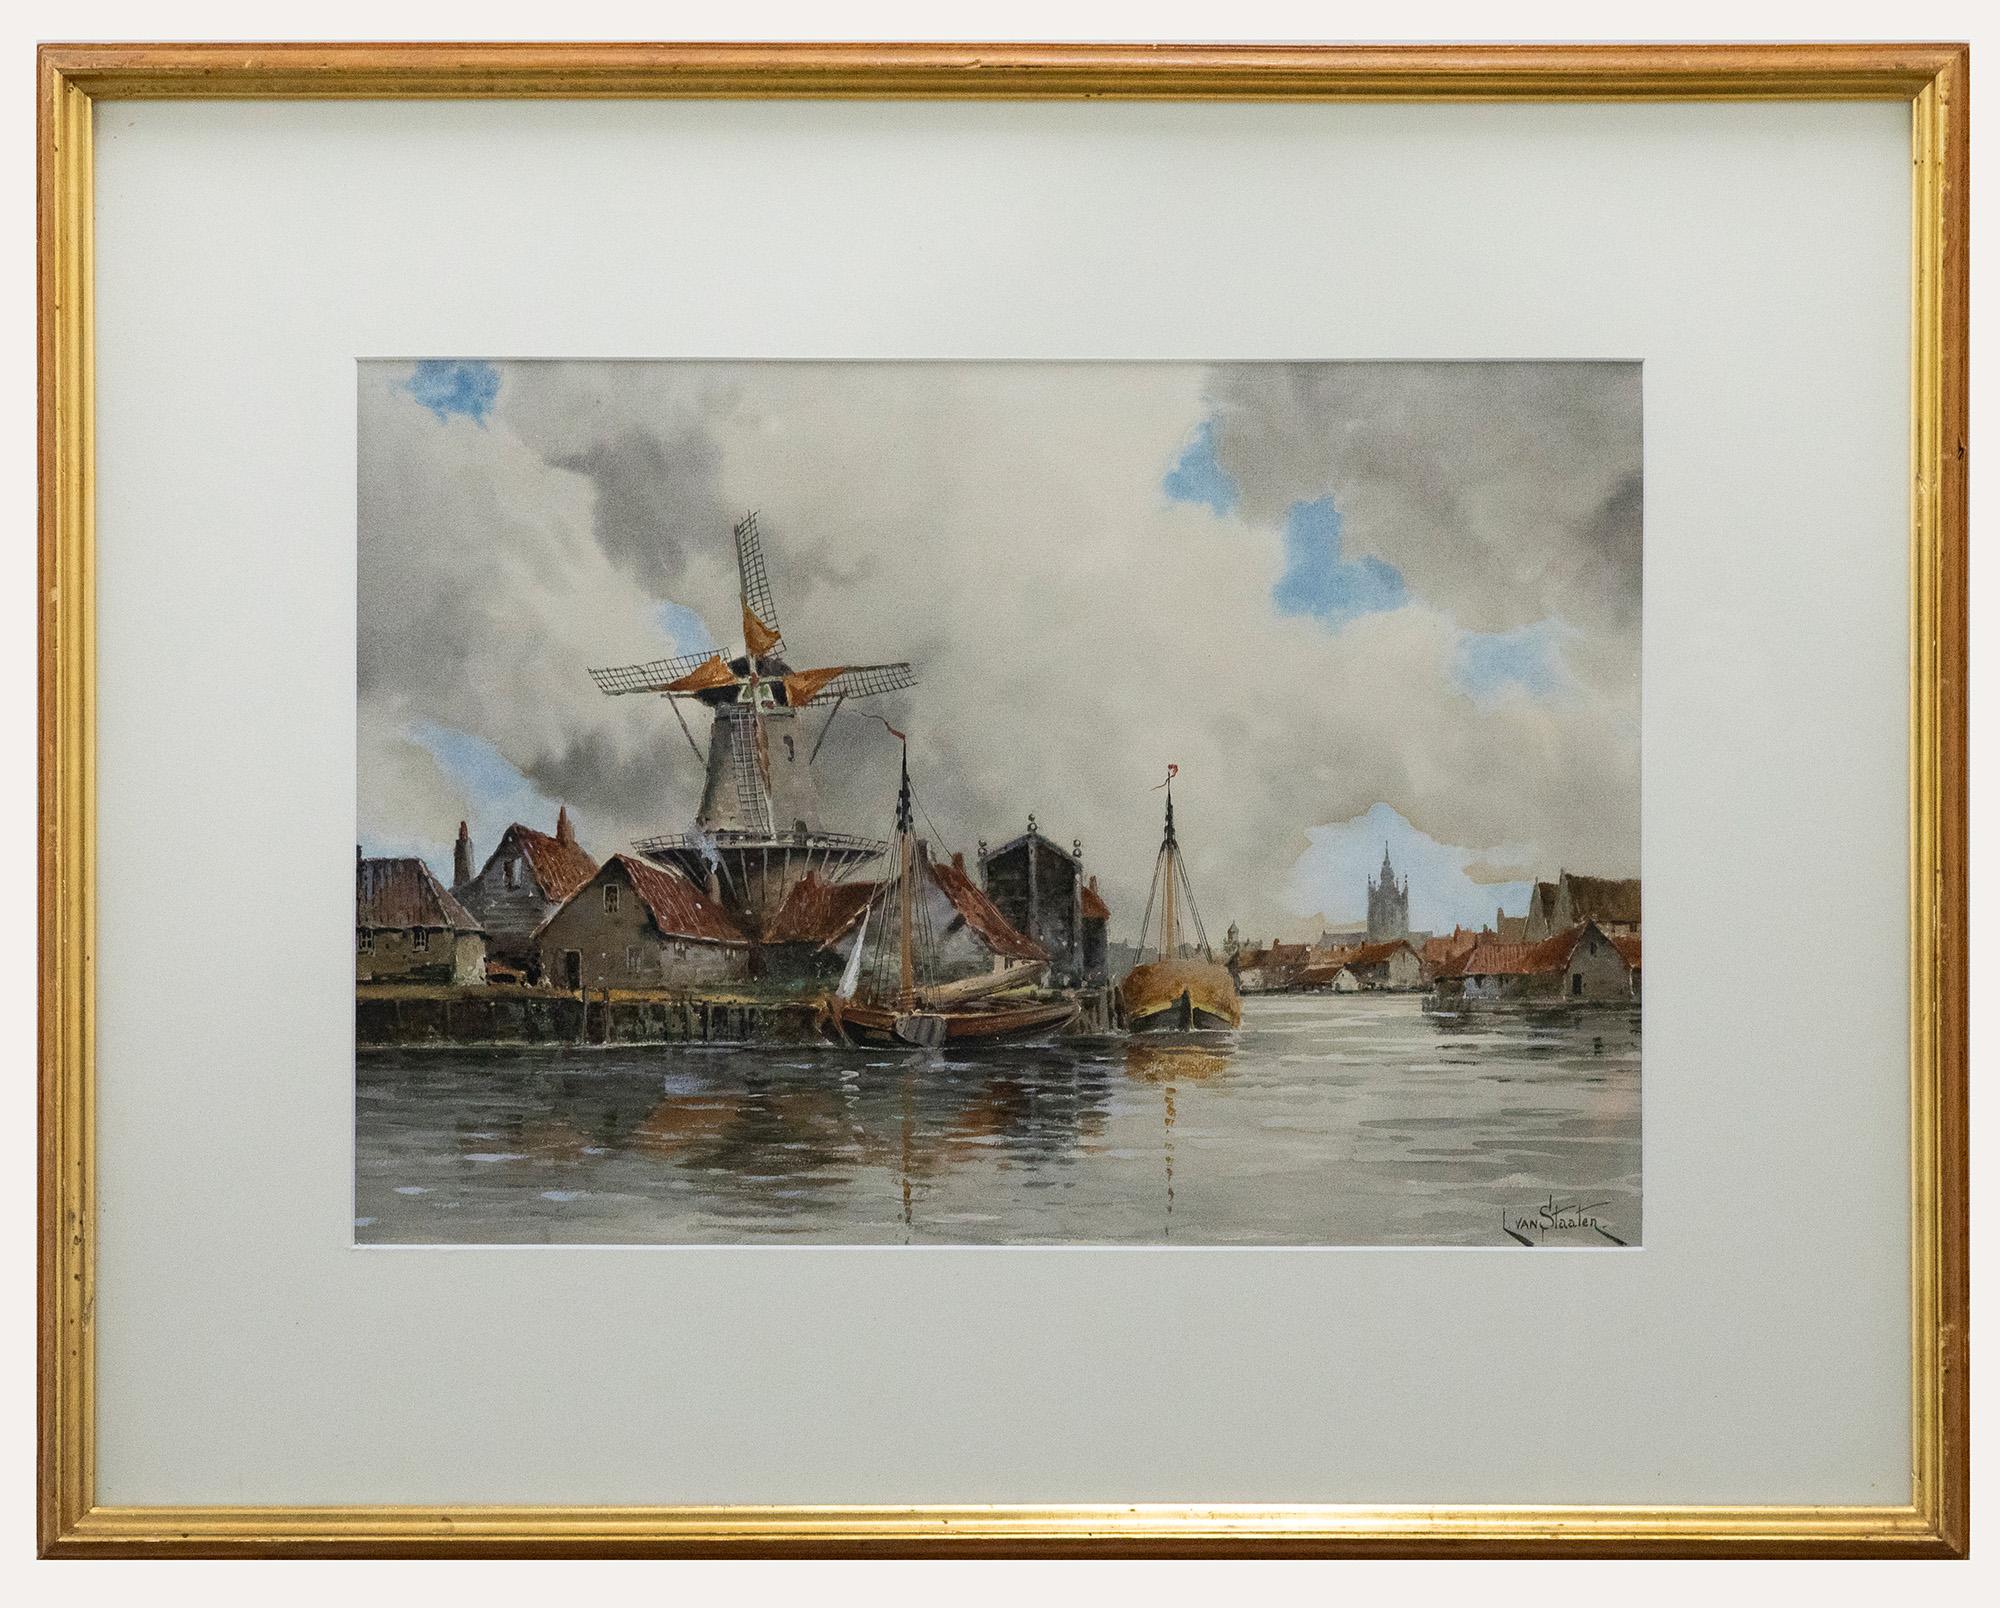 Ein Originalaquarell des niederländischen Malers Louis Van Staaten, auch bekannt als Hermanus II Koekkoek (1836-1909). Signiert unten rechts. Gut präsentiert in einem großen Goldrahmen mit weißem Passepartout. Auf dem Papier. 